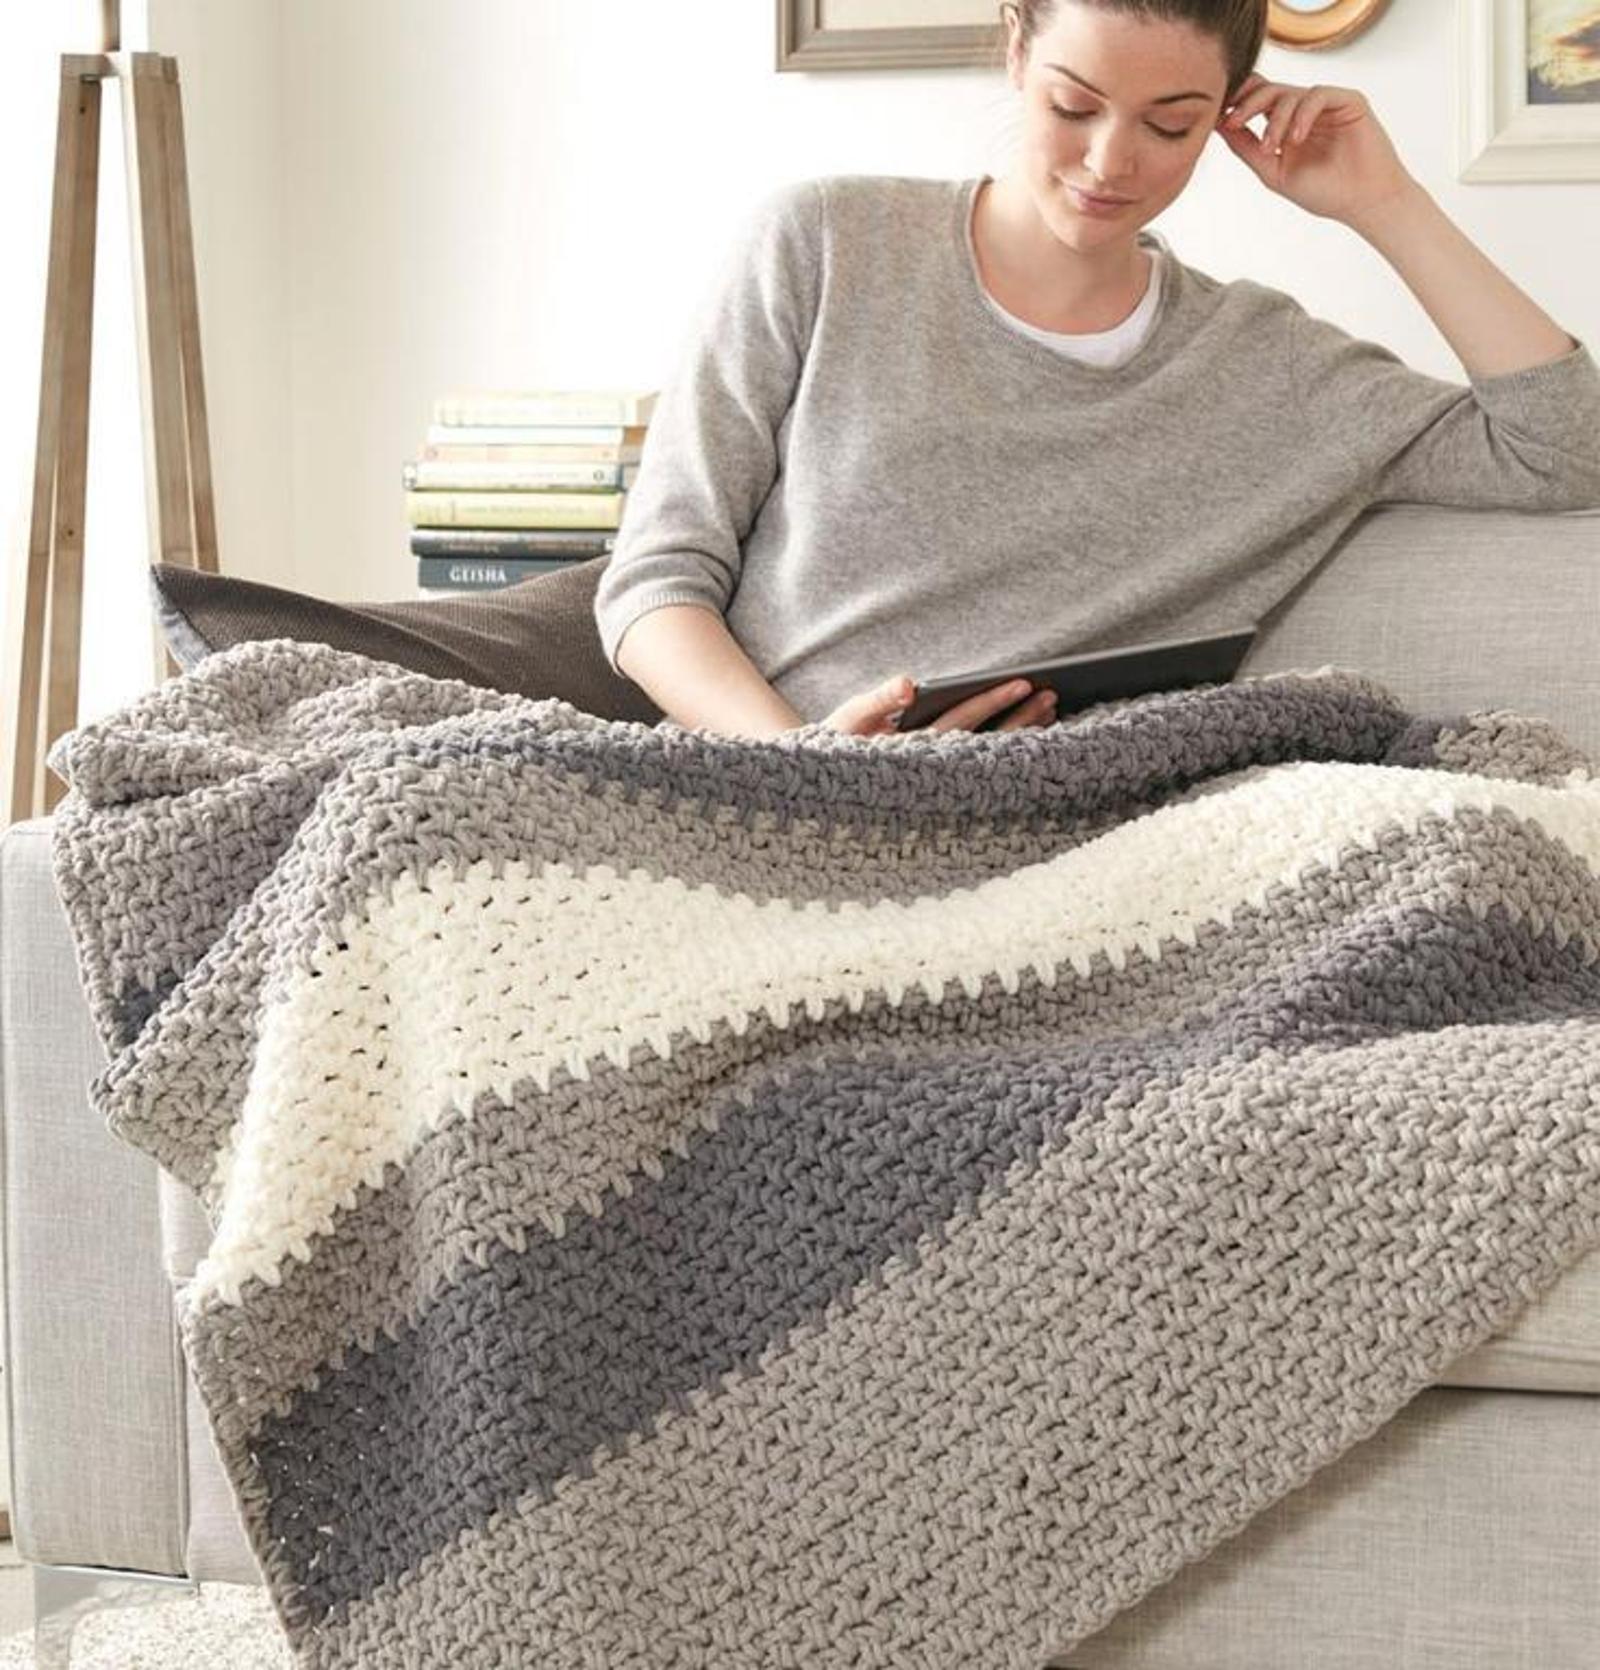 hibernate blanket crochet kit